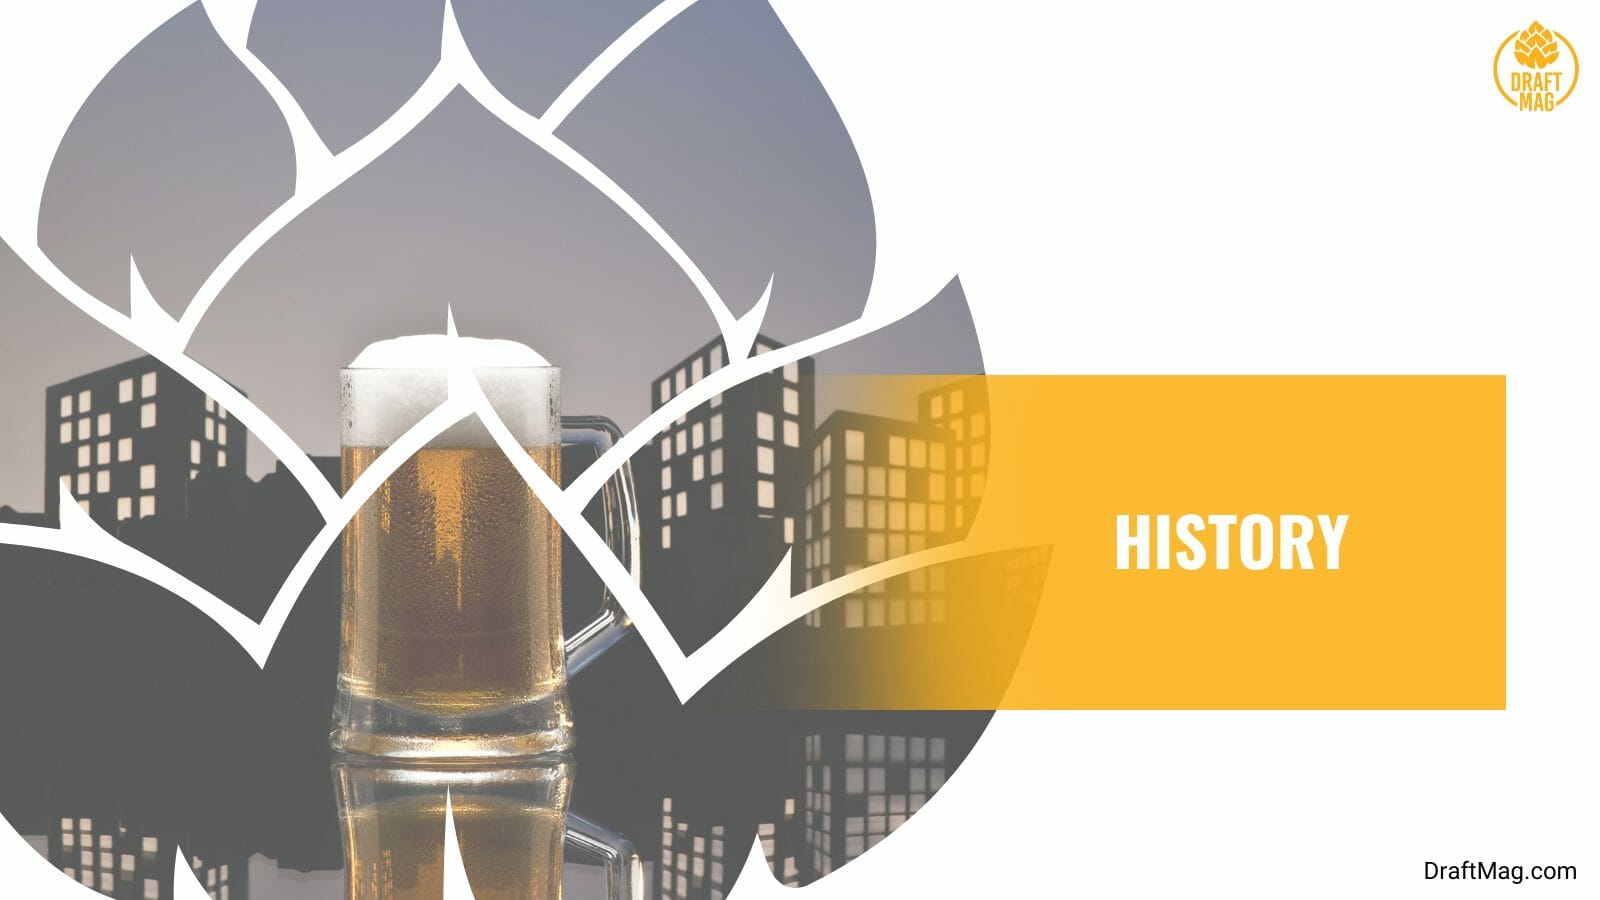 The development of beer